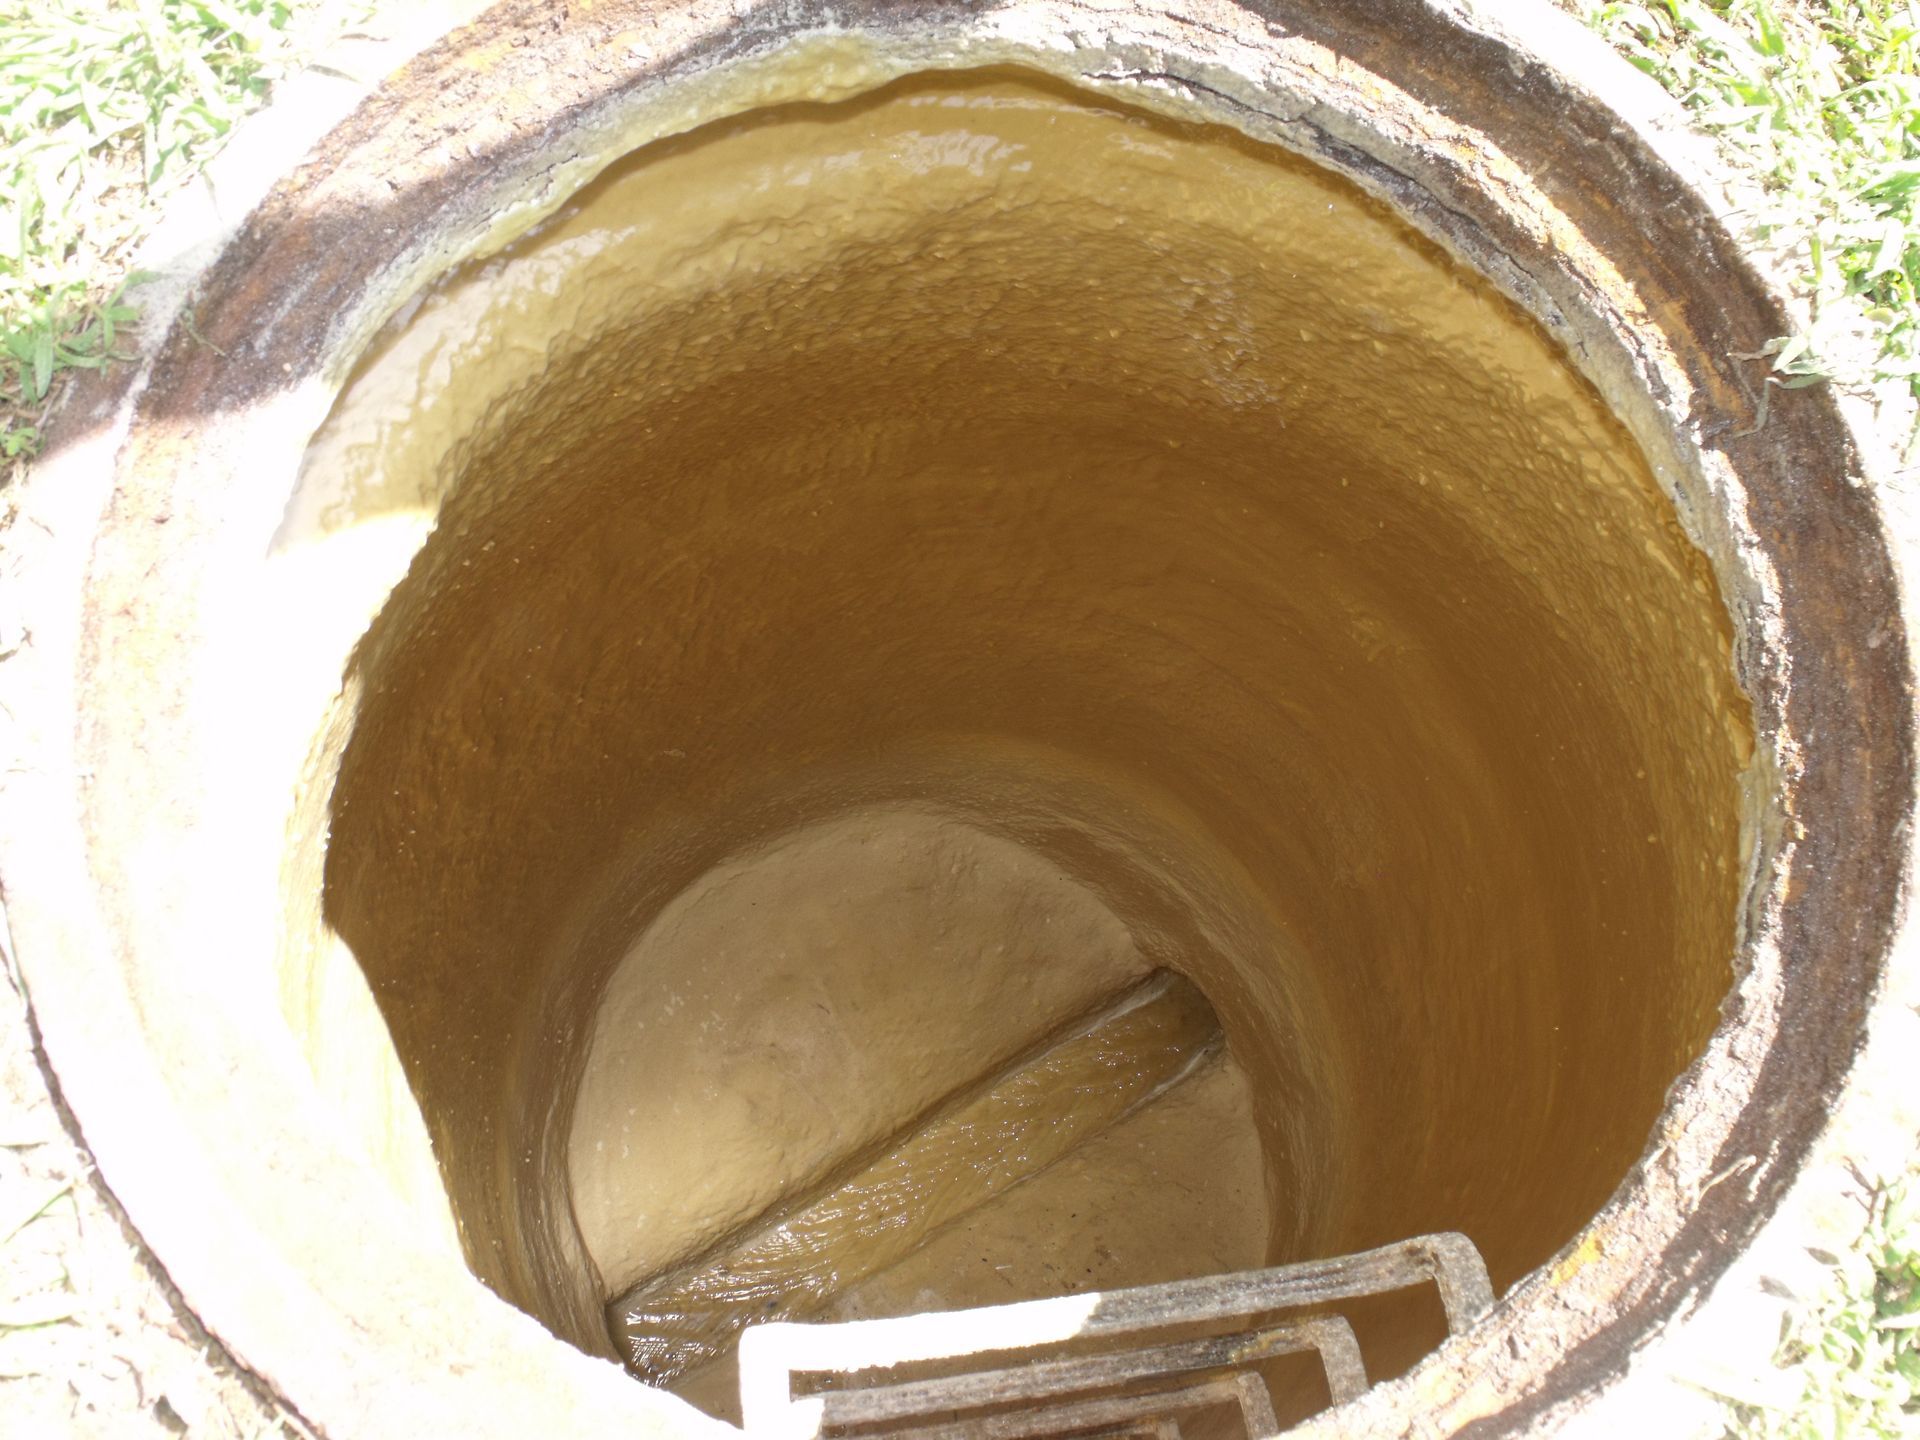 Rehabilitated sewer manhole